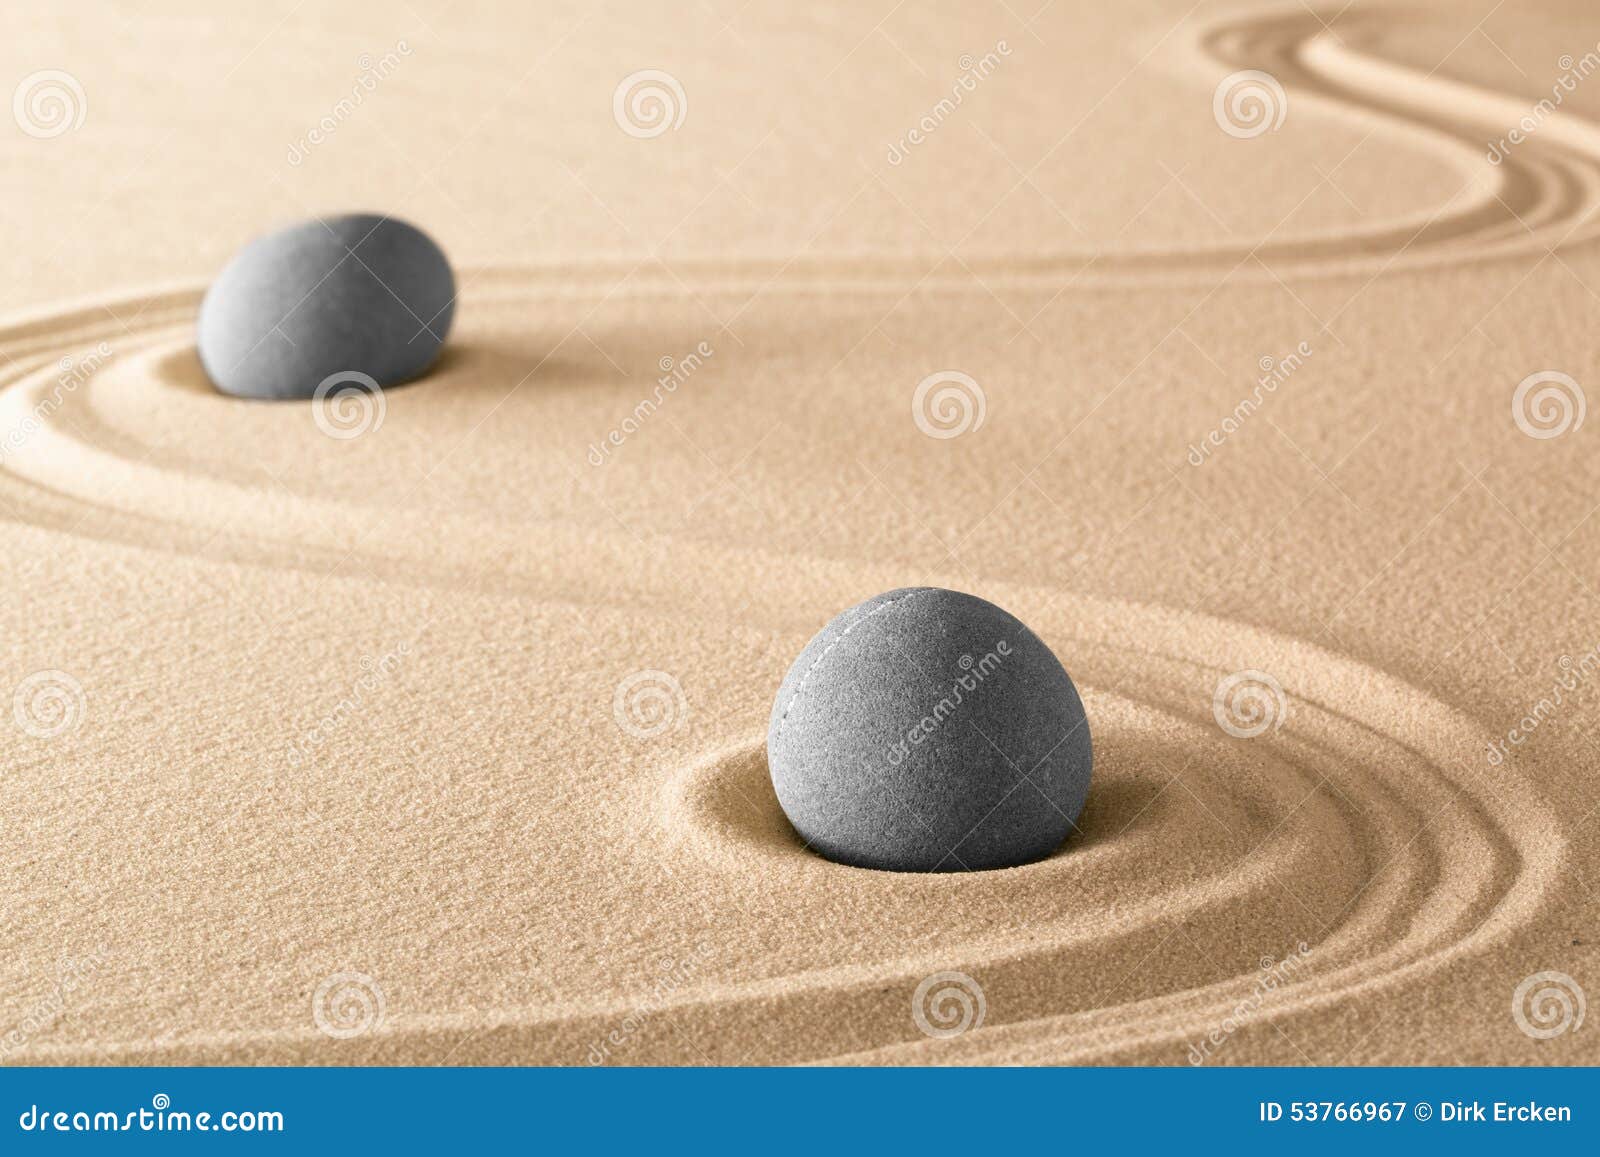 zen stones purity harmony and balance